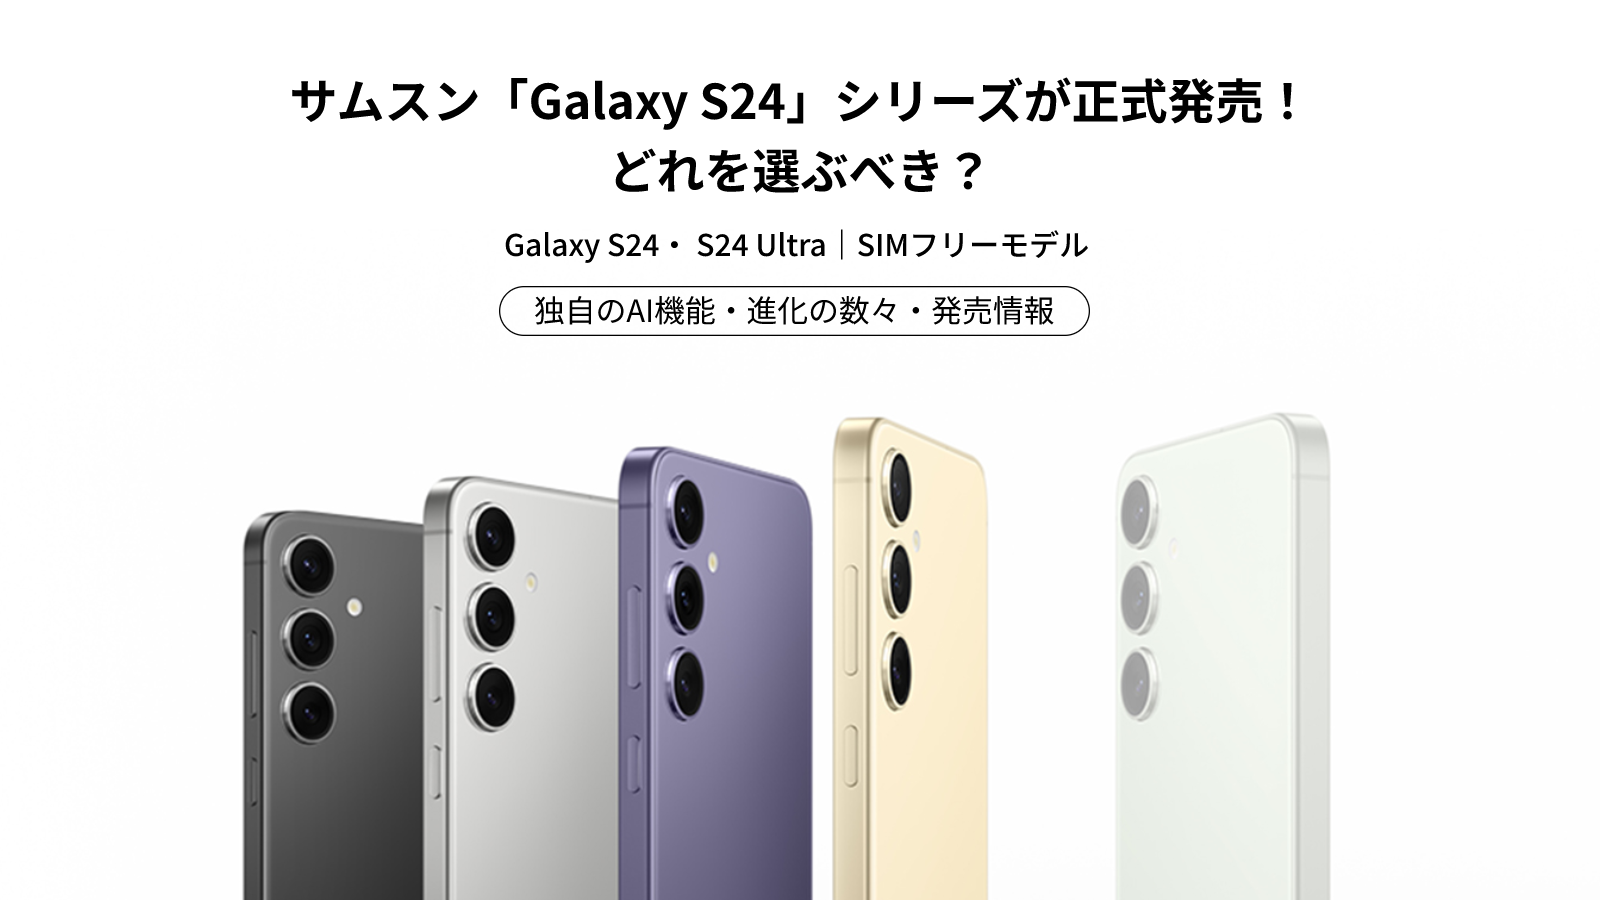 4月11日より、サムスン Galaxy S24シリーズ販売開始。独自のAI機能で 